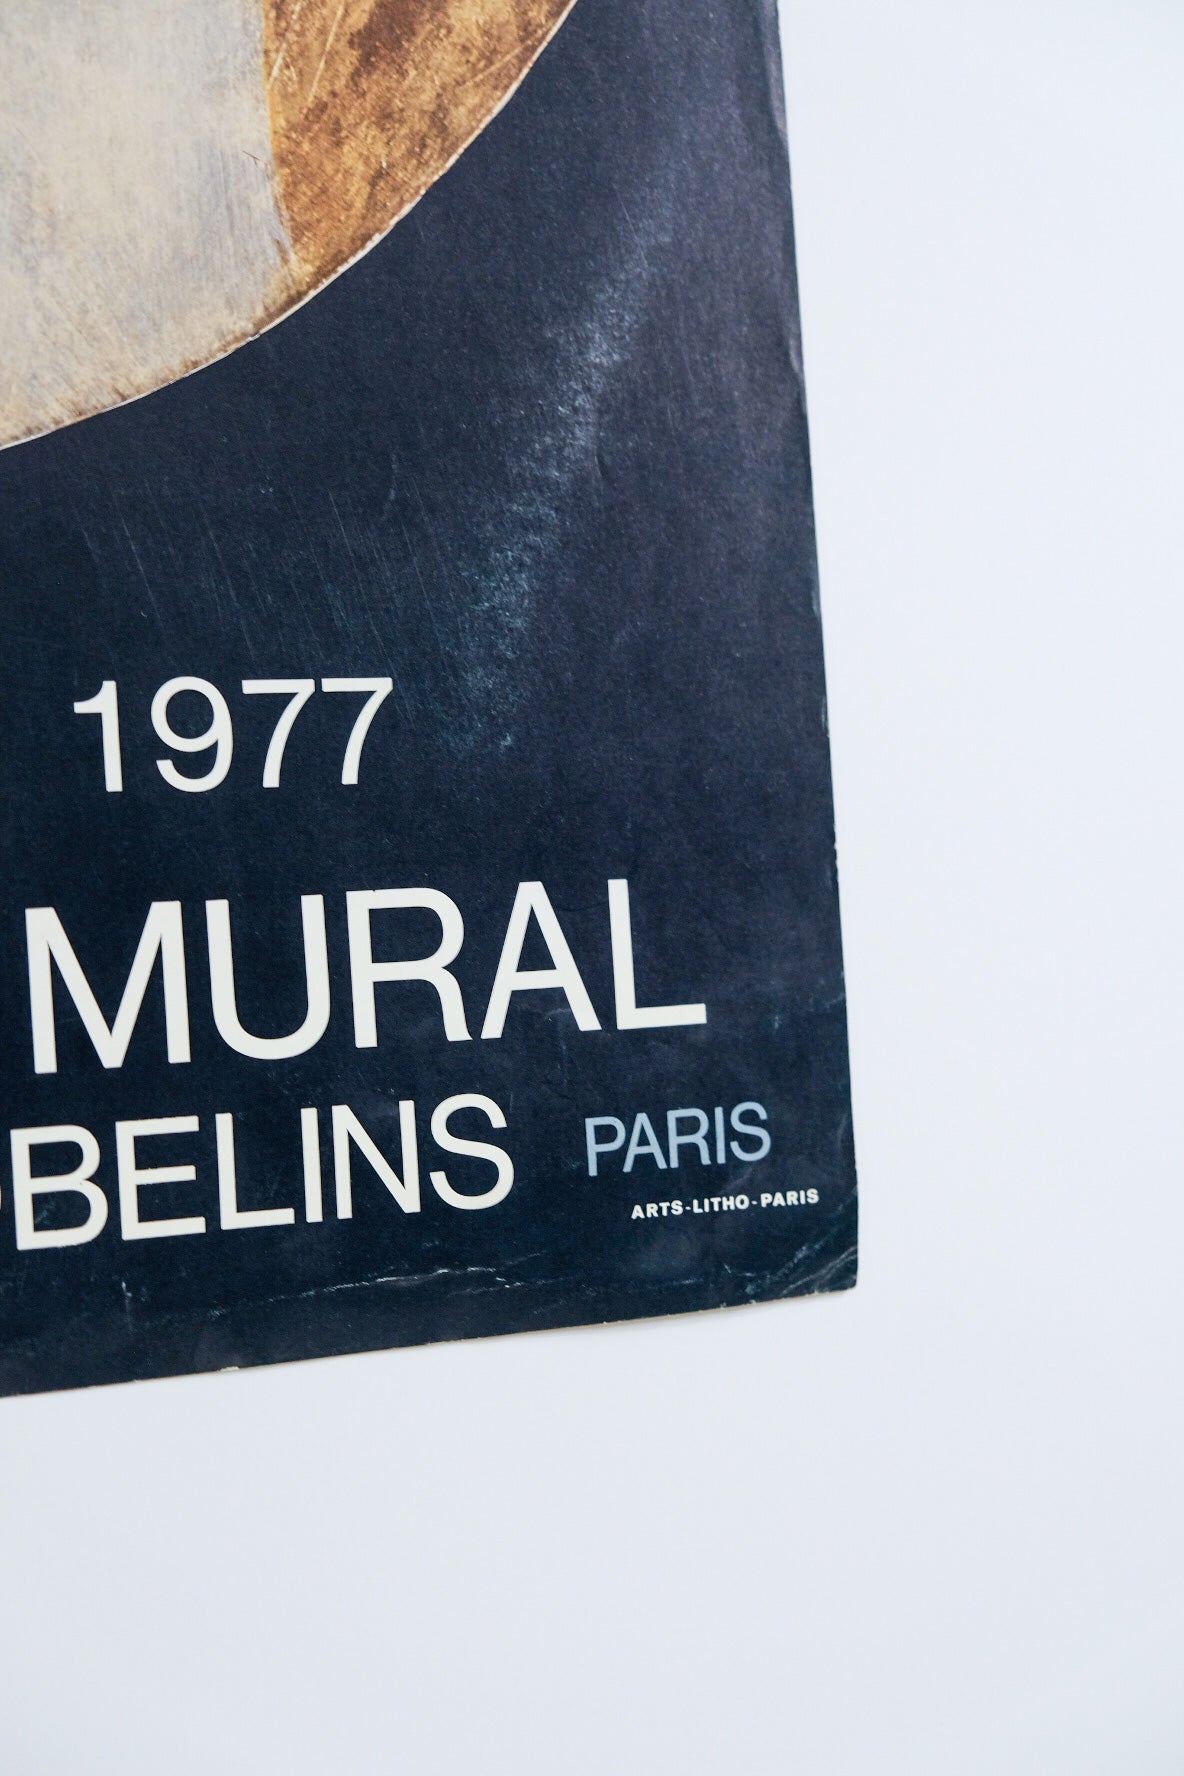 Bonnefoit Gainsbourg Marilou 1977 Exhibition Print